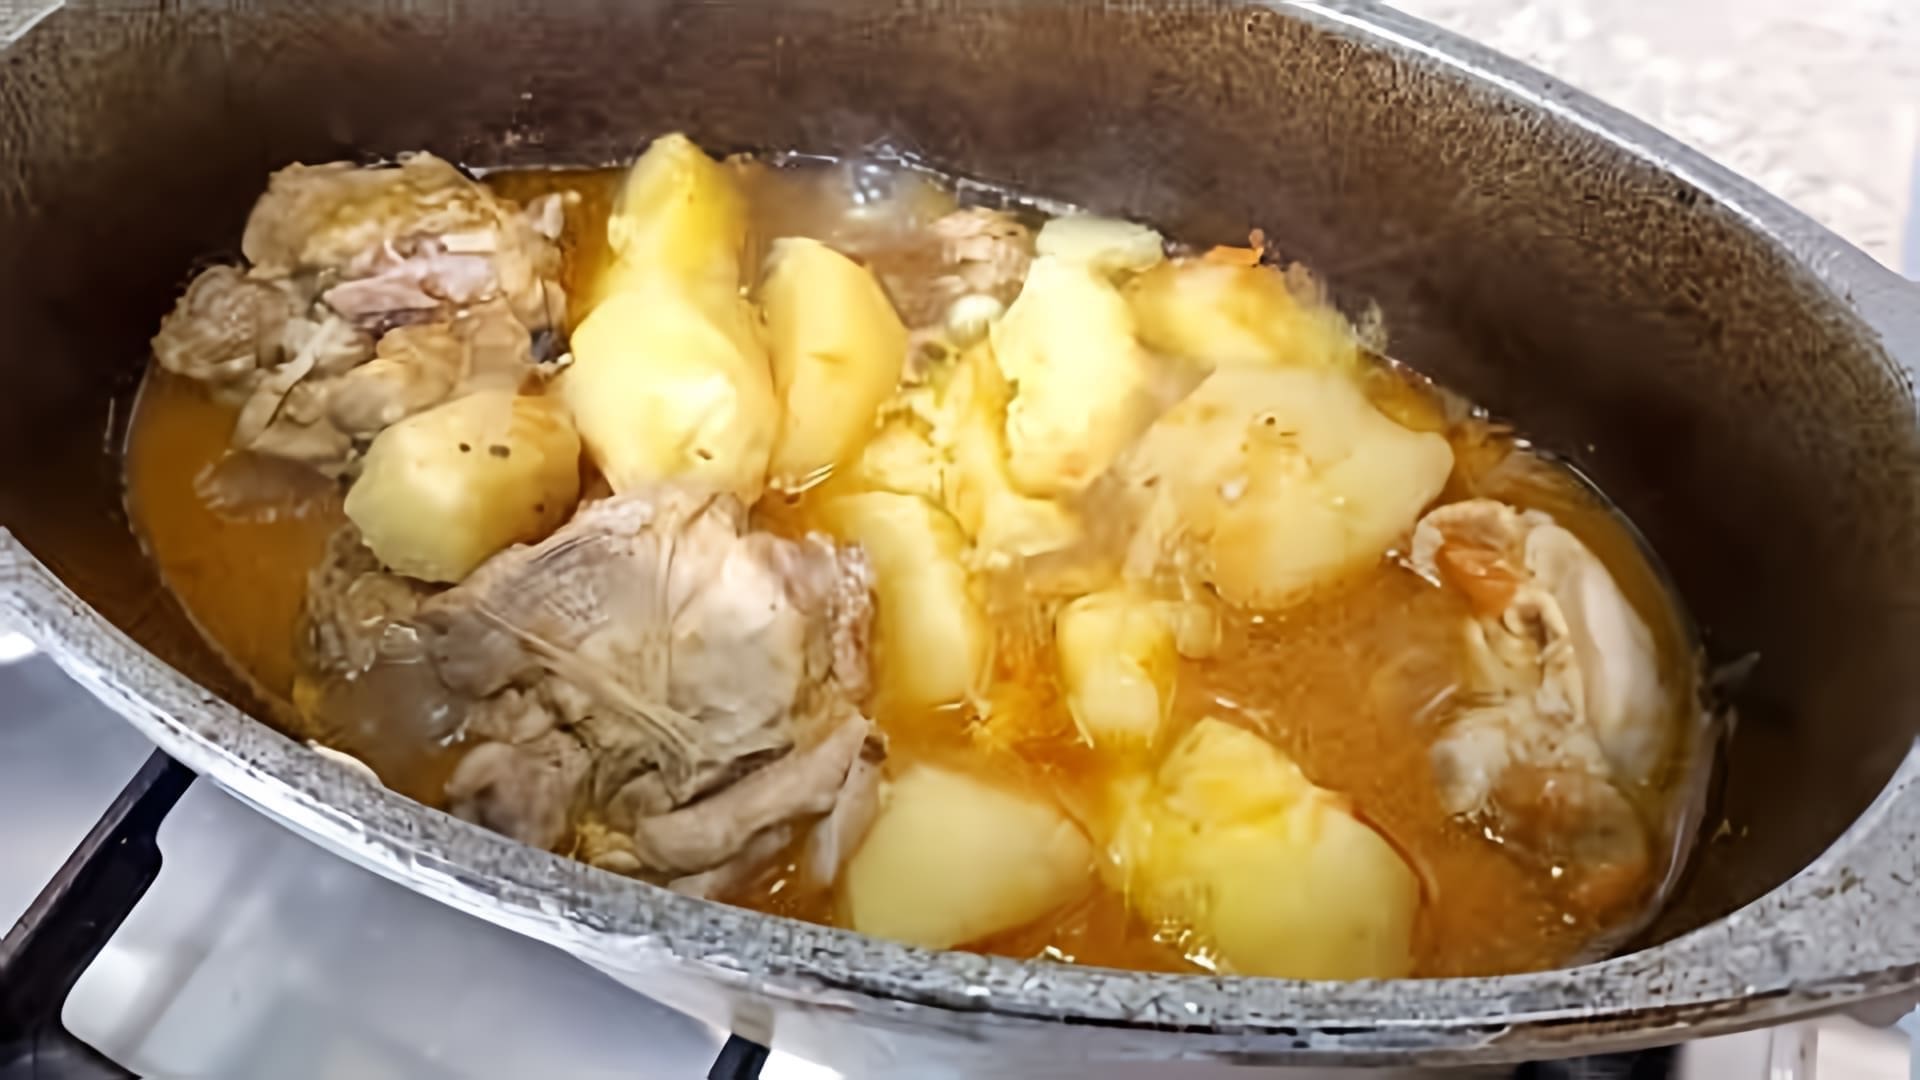 В этом видео-ролике показан процесс приготовления вкусного и сытного блюда - куриных бедрышек с картофелем, тушёных в утятнице